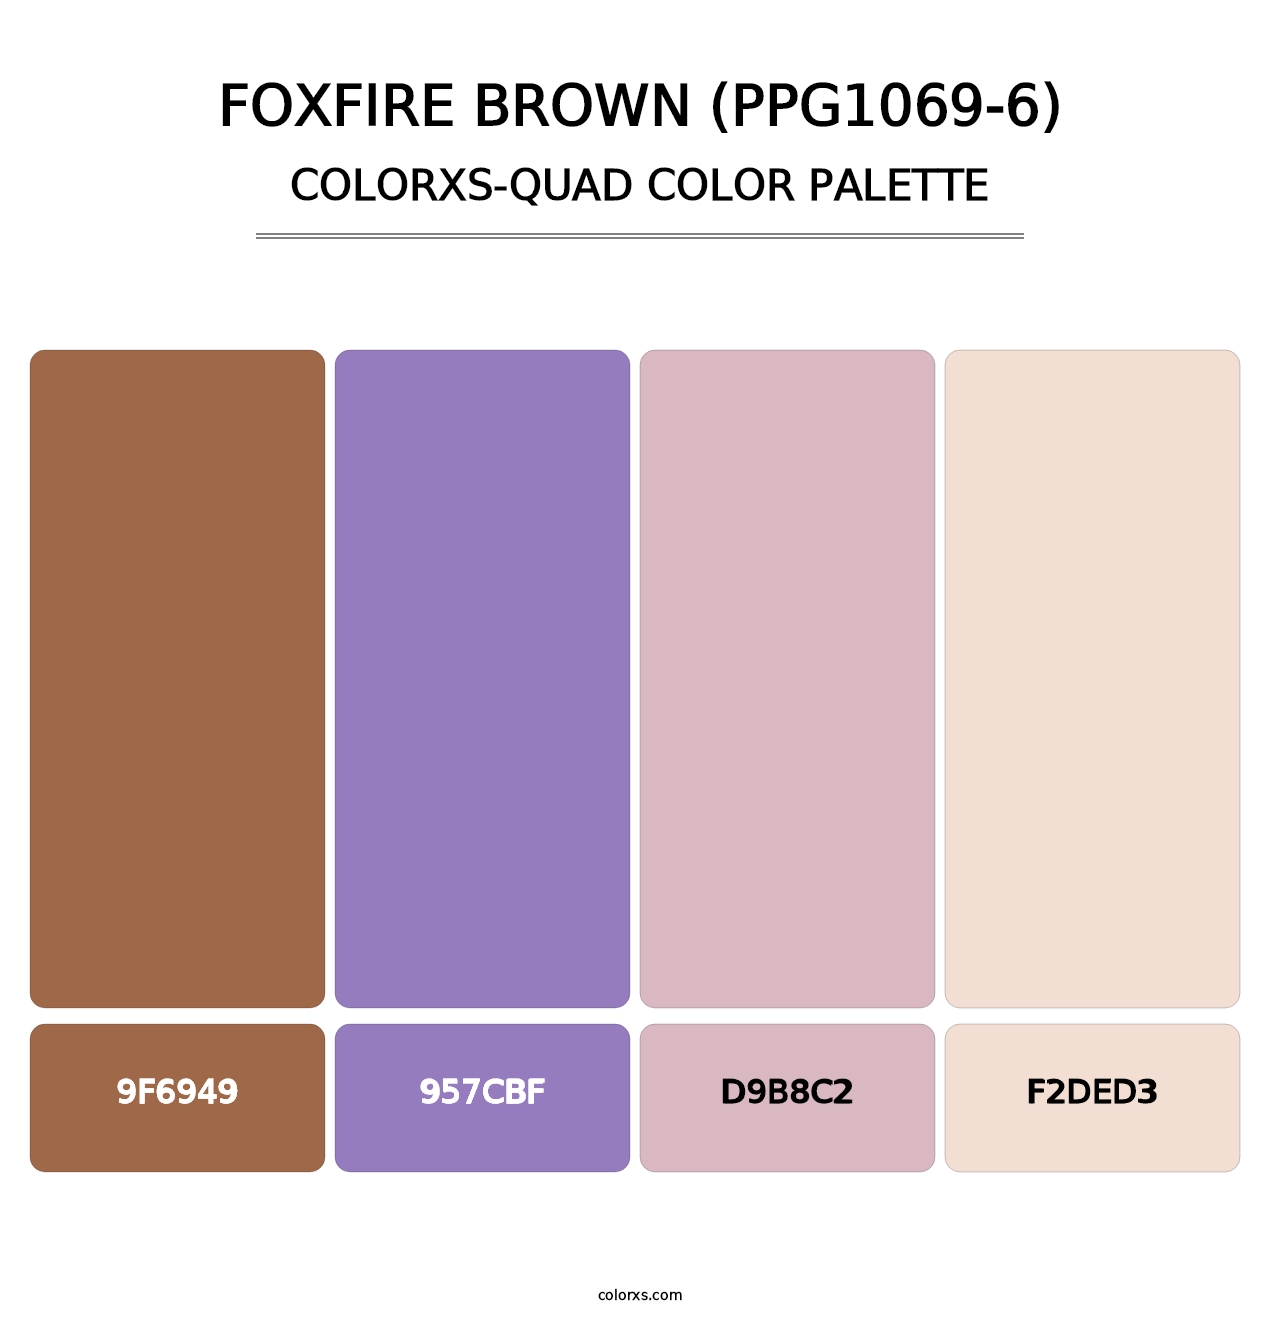 Foxfire Brown (PPG1069-6) - Colorxs Quad Palette